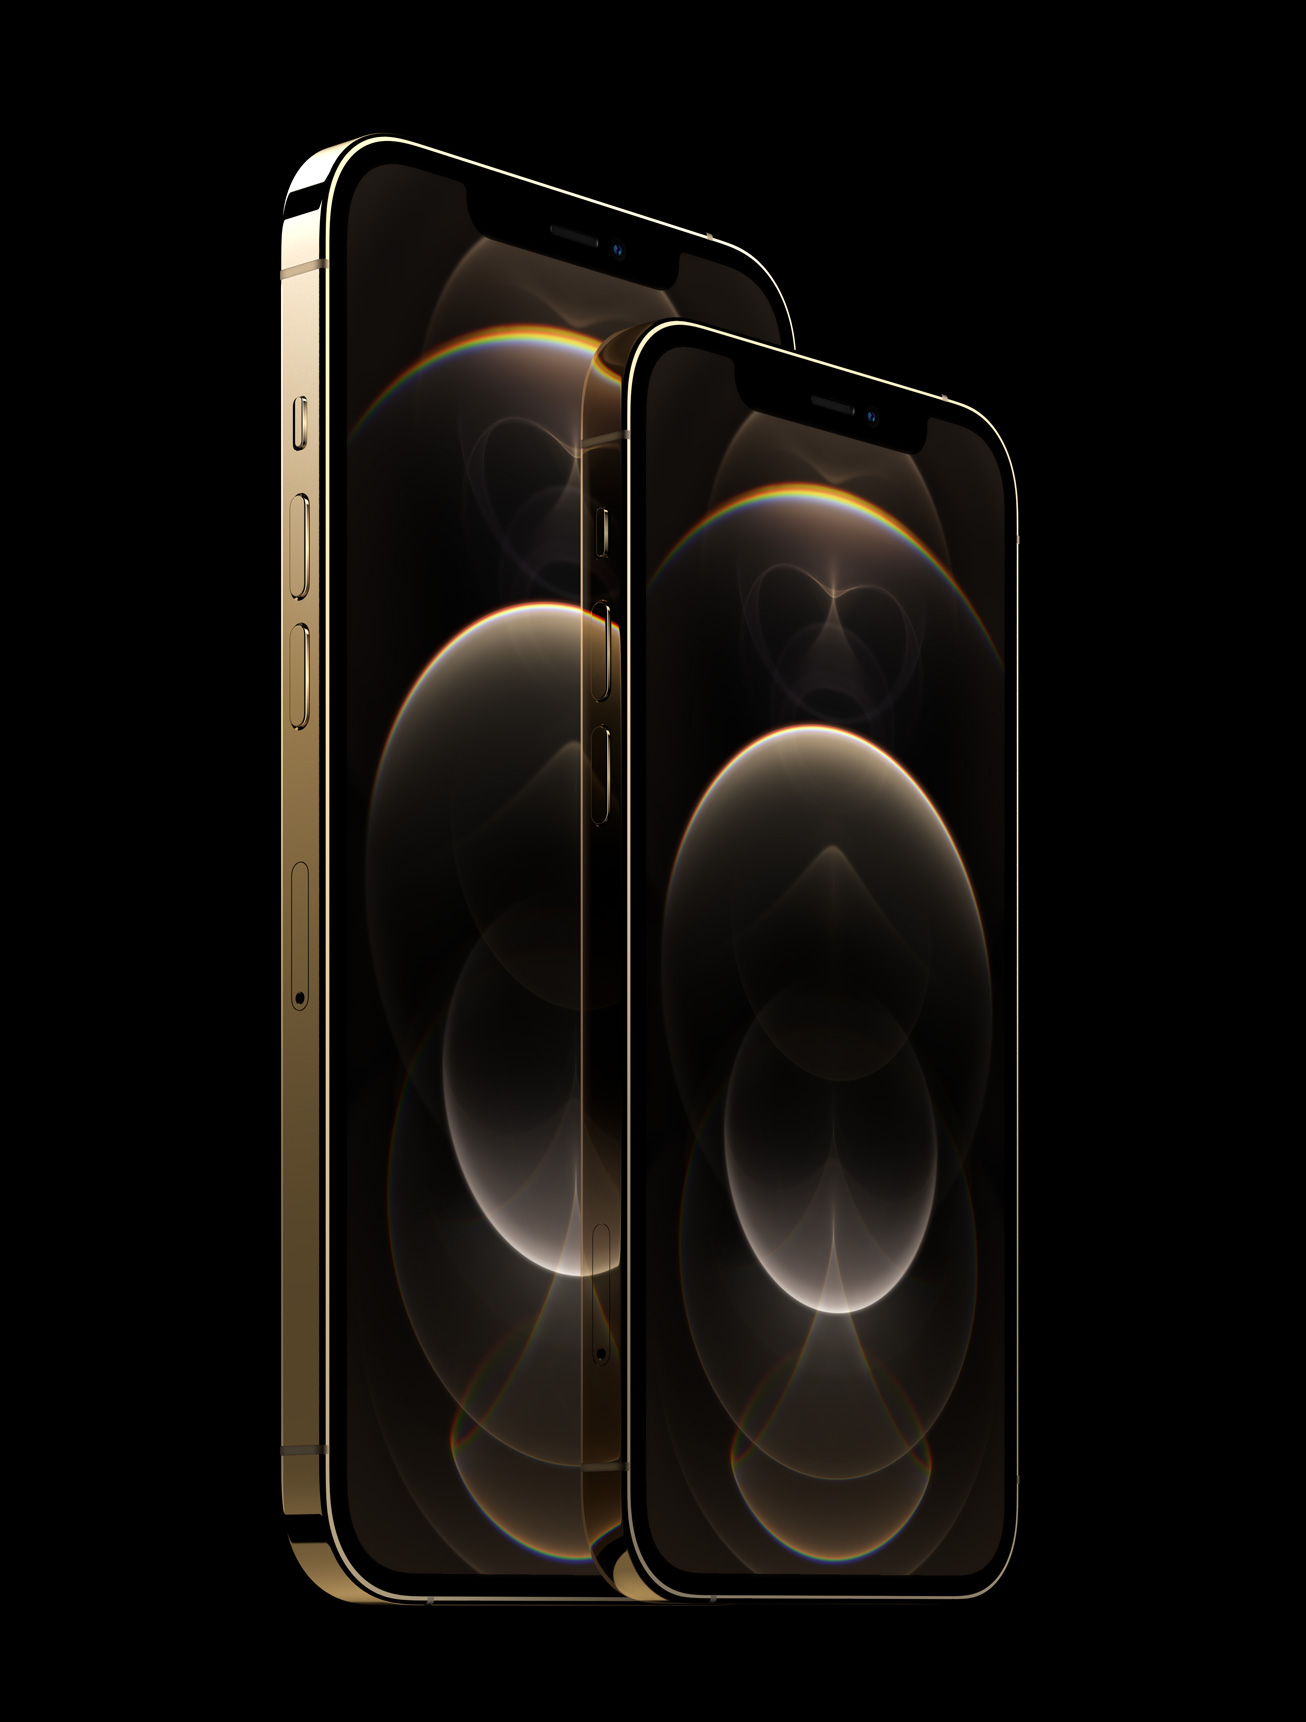 Tận hưởng công nghệ mạ PVD với iPhone 12 Pro Max Gold, tạo nên vẻ đẹp và độ bền vượt trội. Kỹ thuật mạ PVD là gì? Đó là một quá trình tạo ra bề mặt kim loại chắc chắn và bền bỉ hơn bằng cách sử dụng hơi kim loại của các nguyên tử. Hãy khám phá những ưu điểm của công nghệ này với thiết bị đẳng cấp nhất hiện nay - iPhone 12 Pro Max Gold.